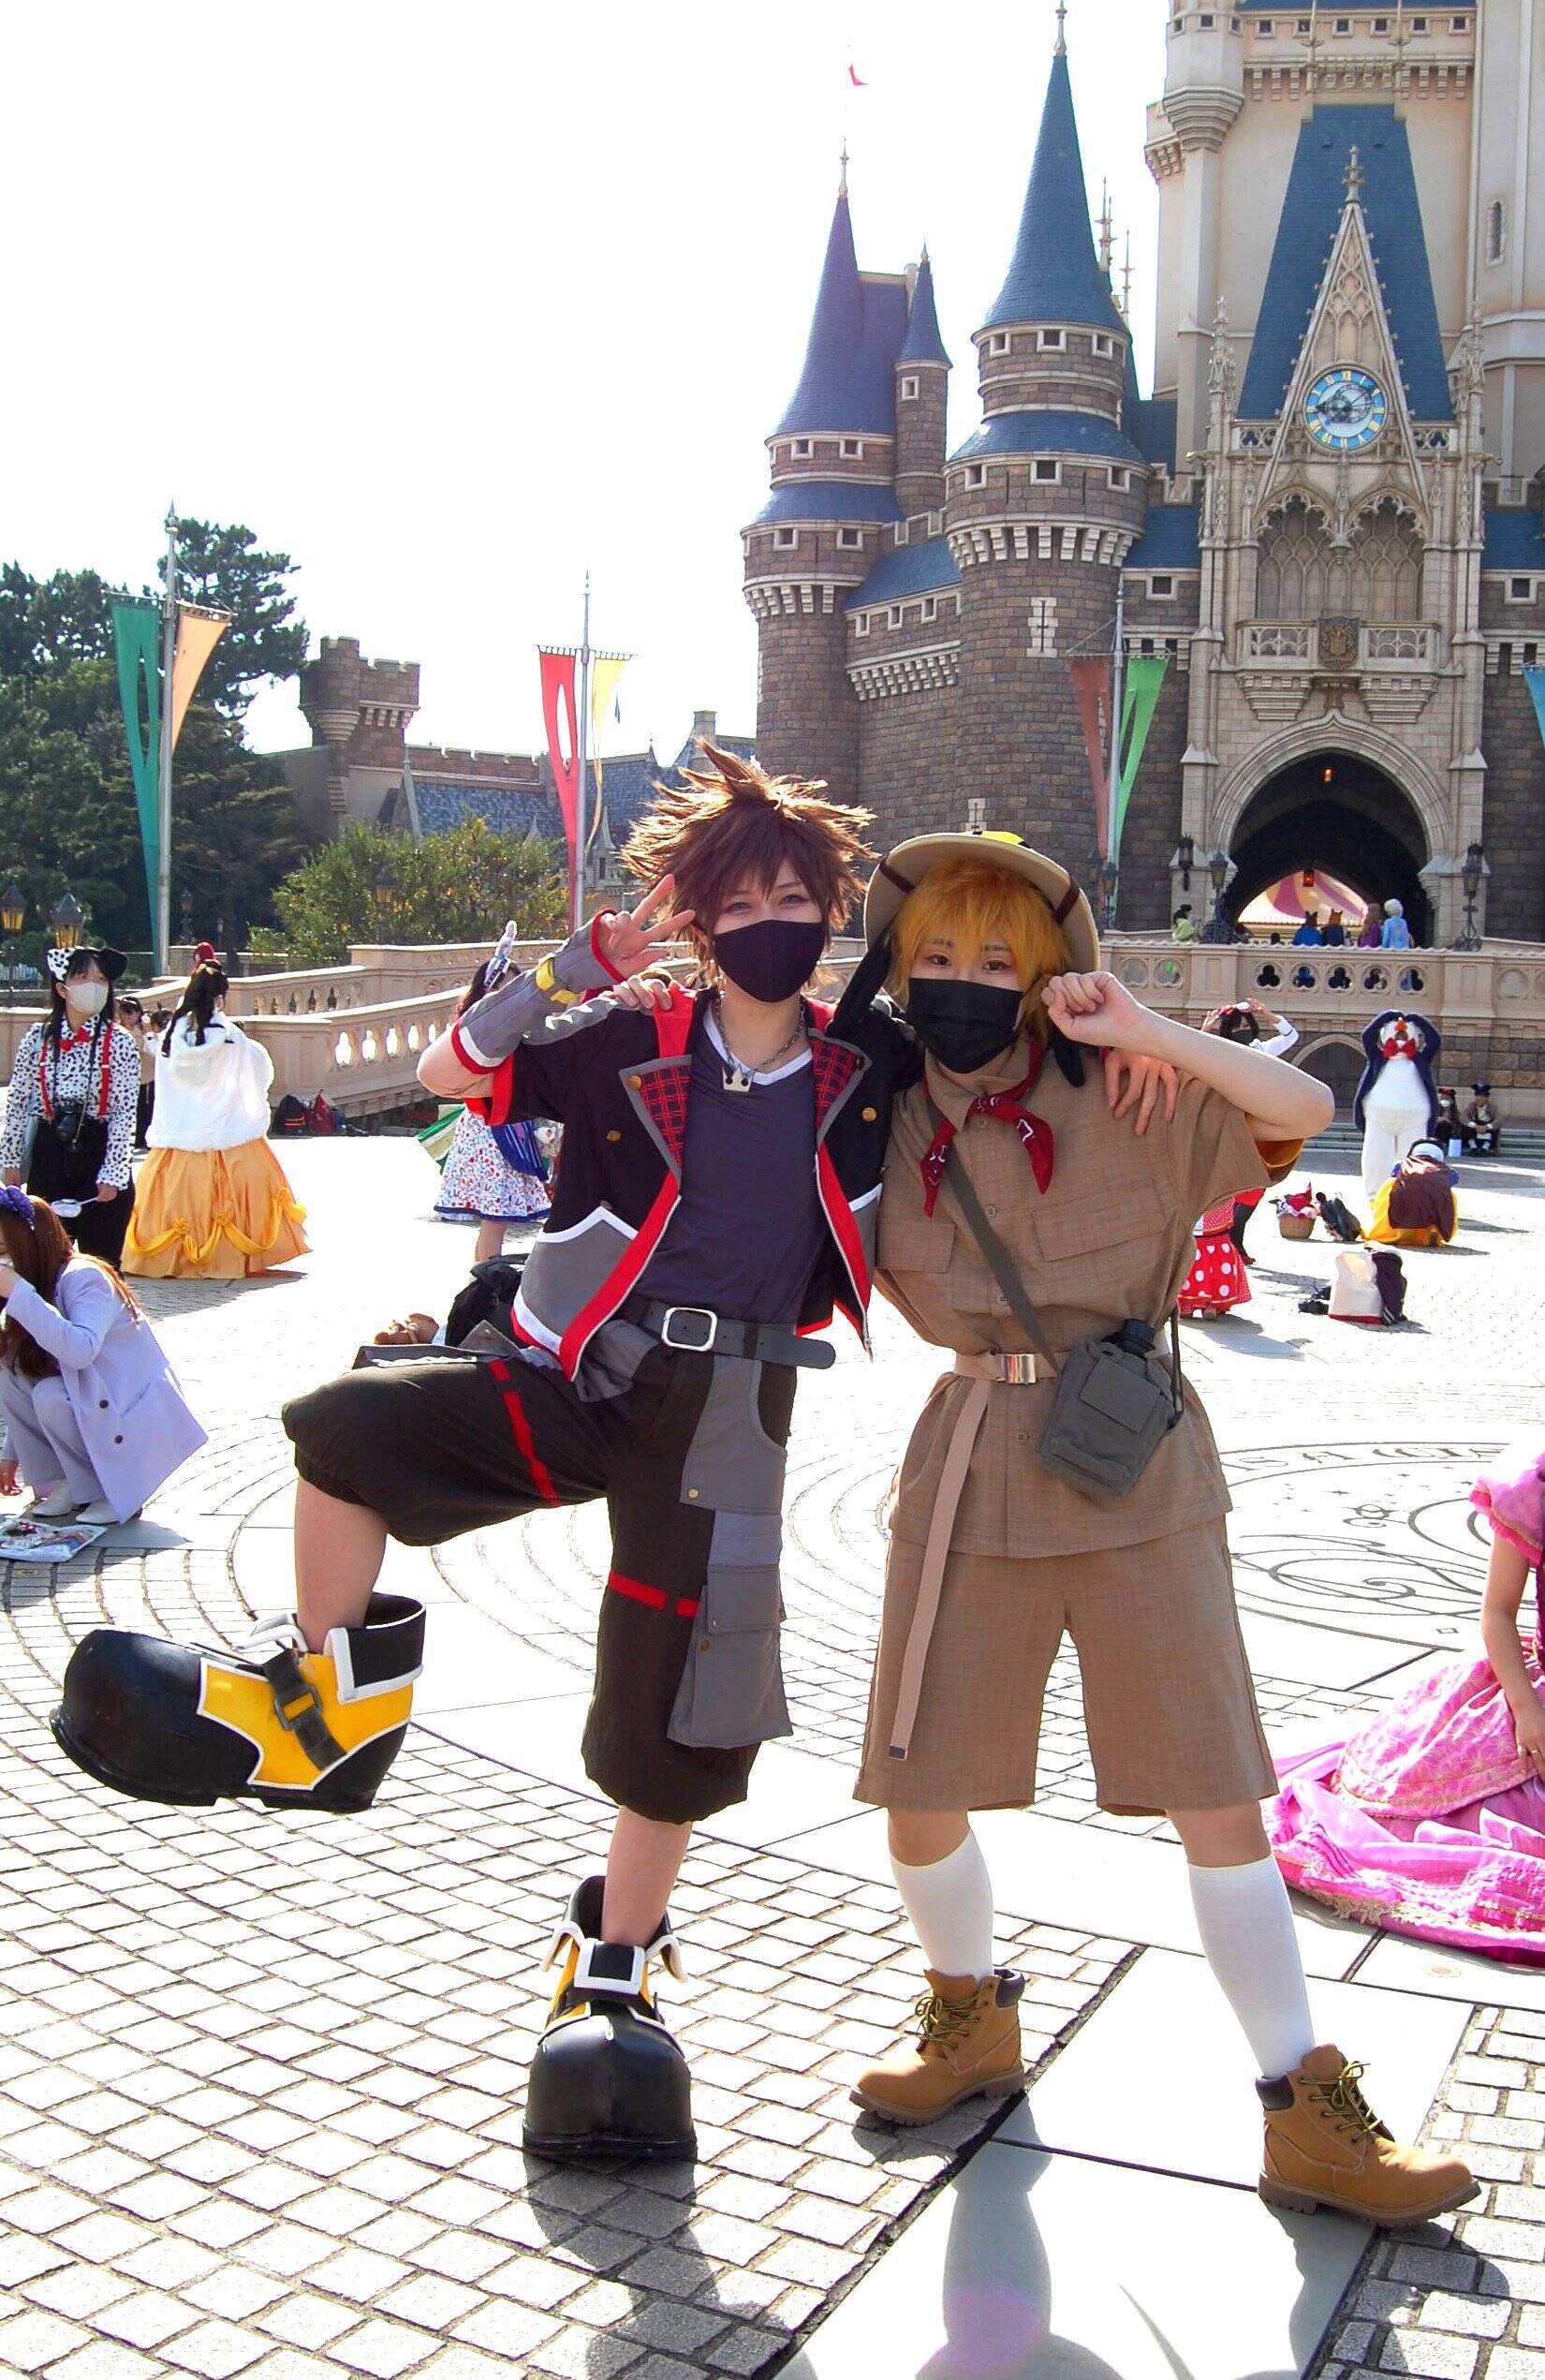 ハロウィーン フル仮装 復活の 東京ディズニーランド 素敵な皆さまの写真たち ミッキーマウスのグリーティング パレード 21年10月26日 エキサイトニュース